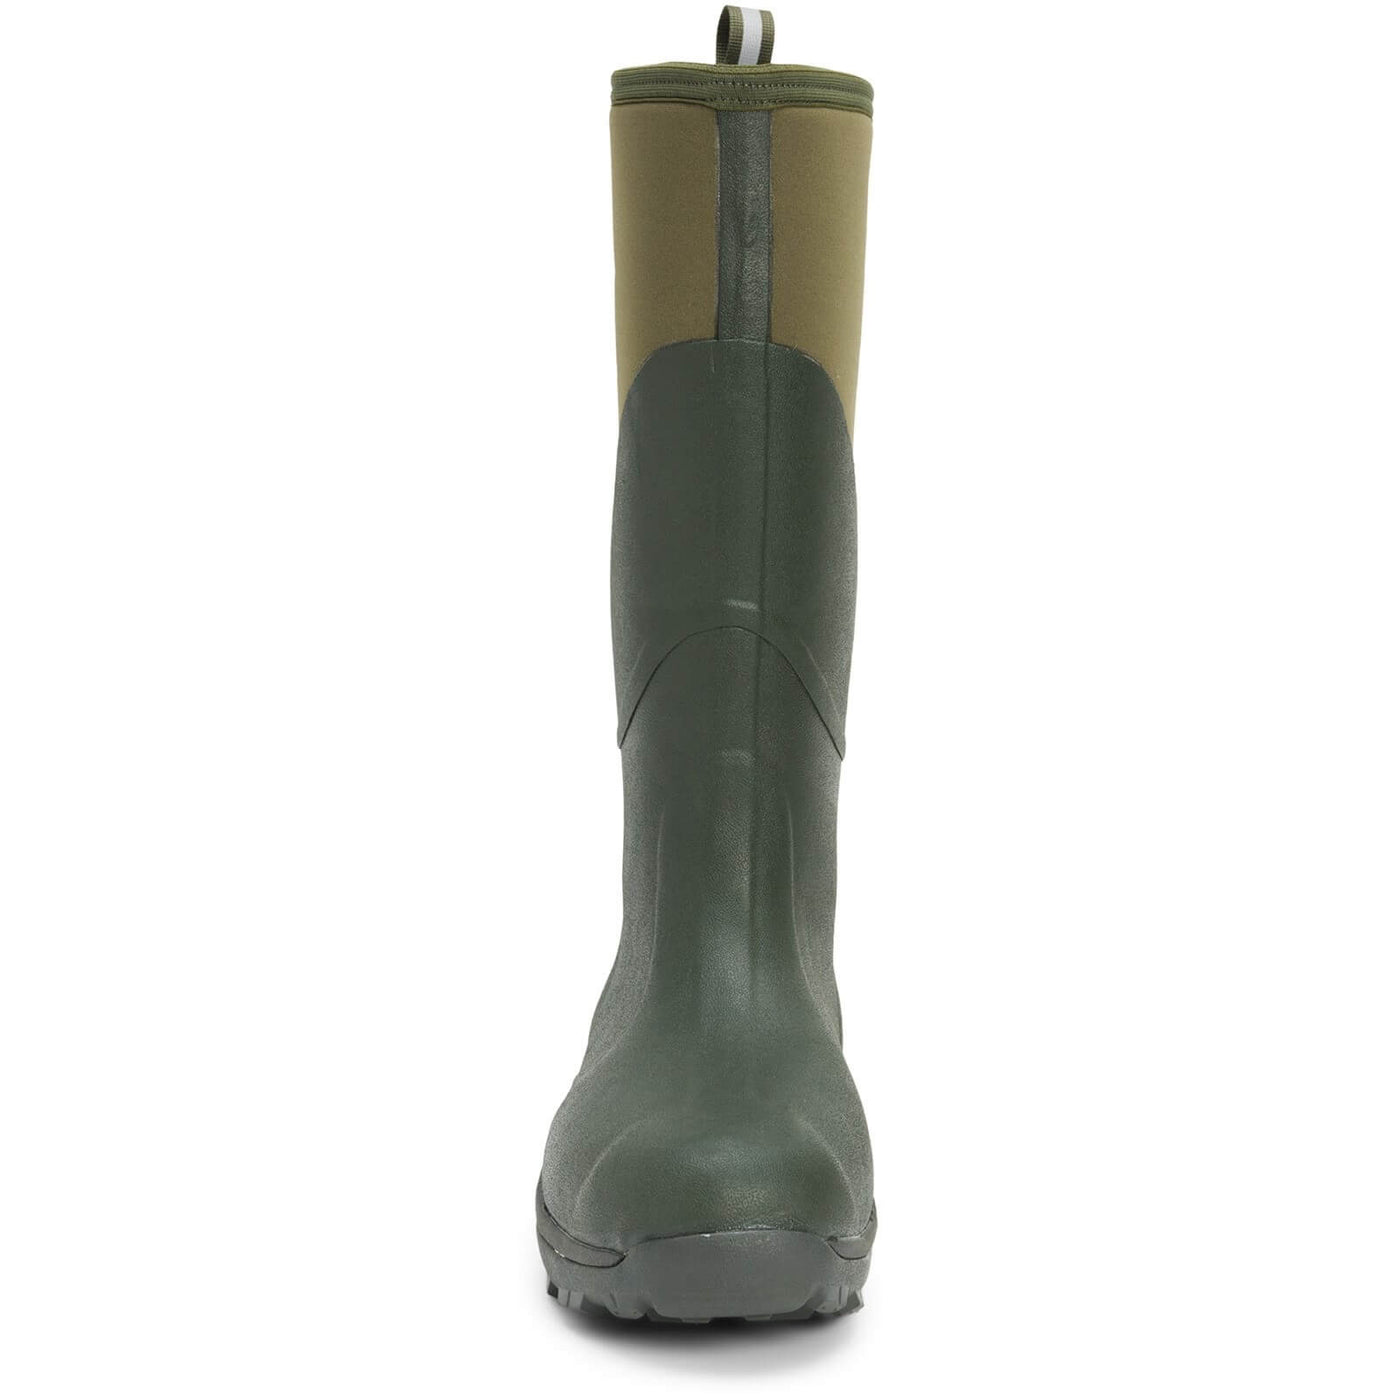 Muck Boots Muckmaster Hi Wellies Moss 3#colour_moss-army-green